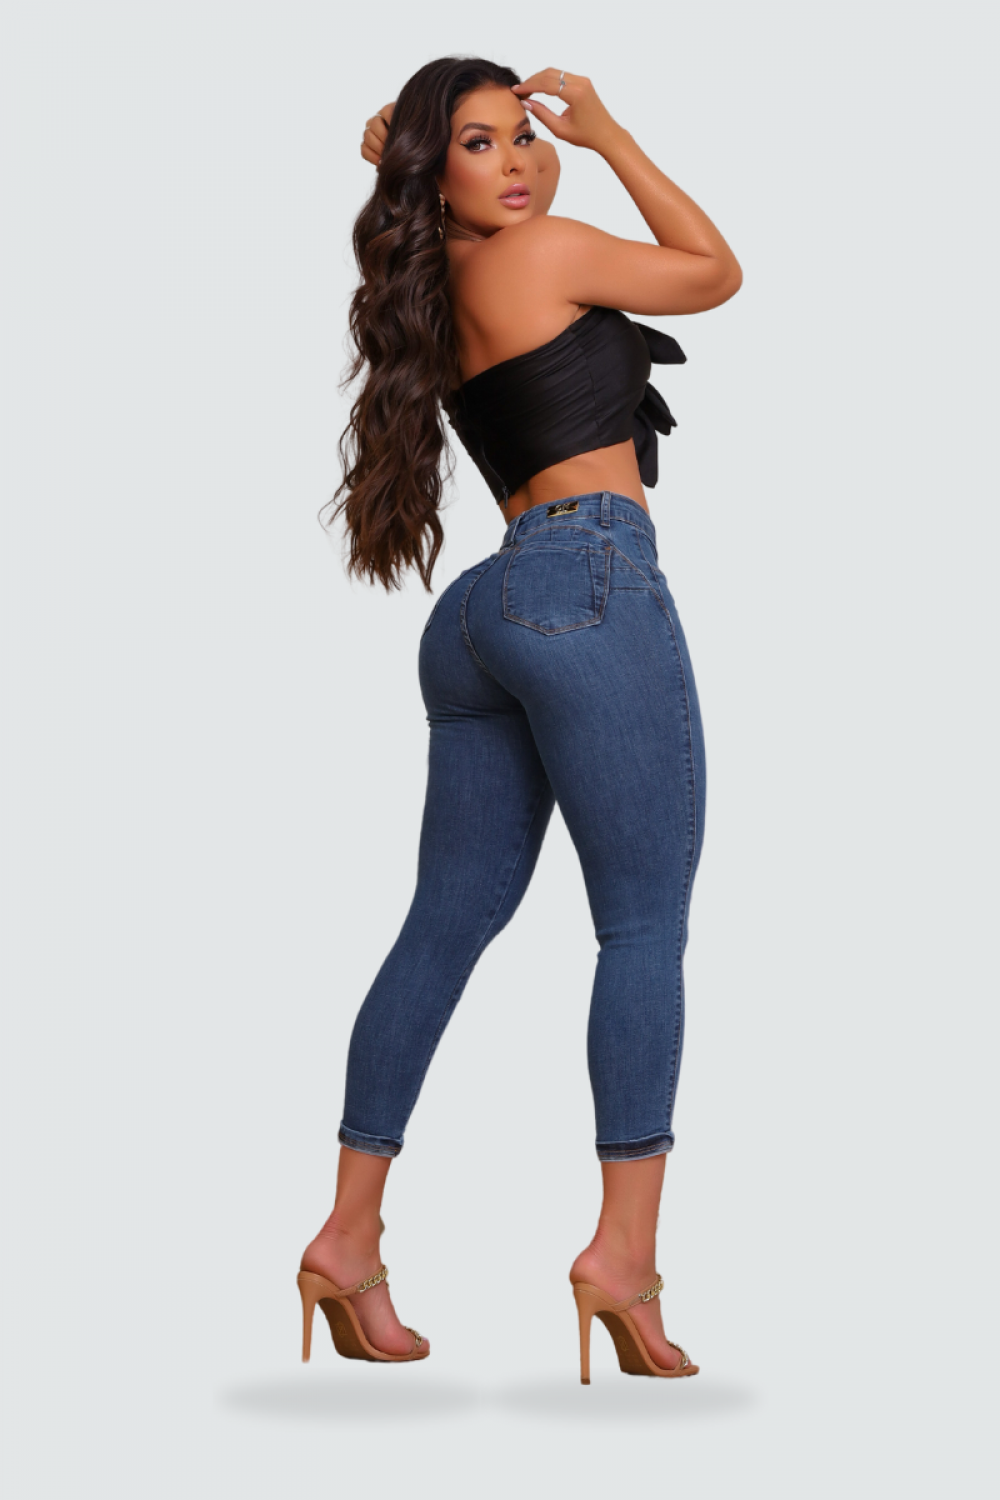 Calça Feminina Capri jeans modeladora magnifica com detalhe na